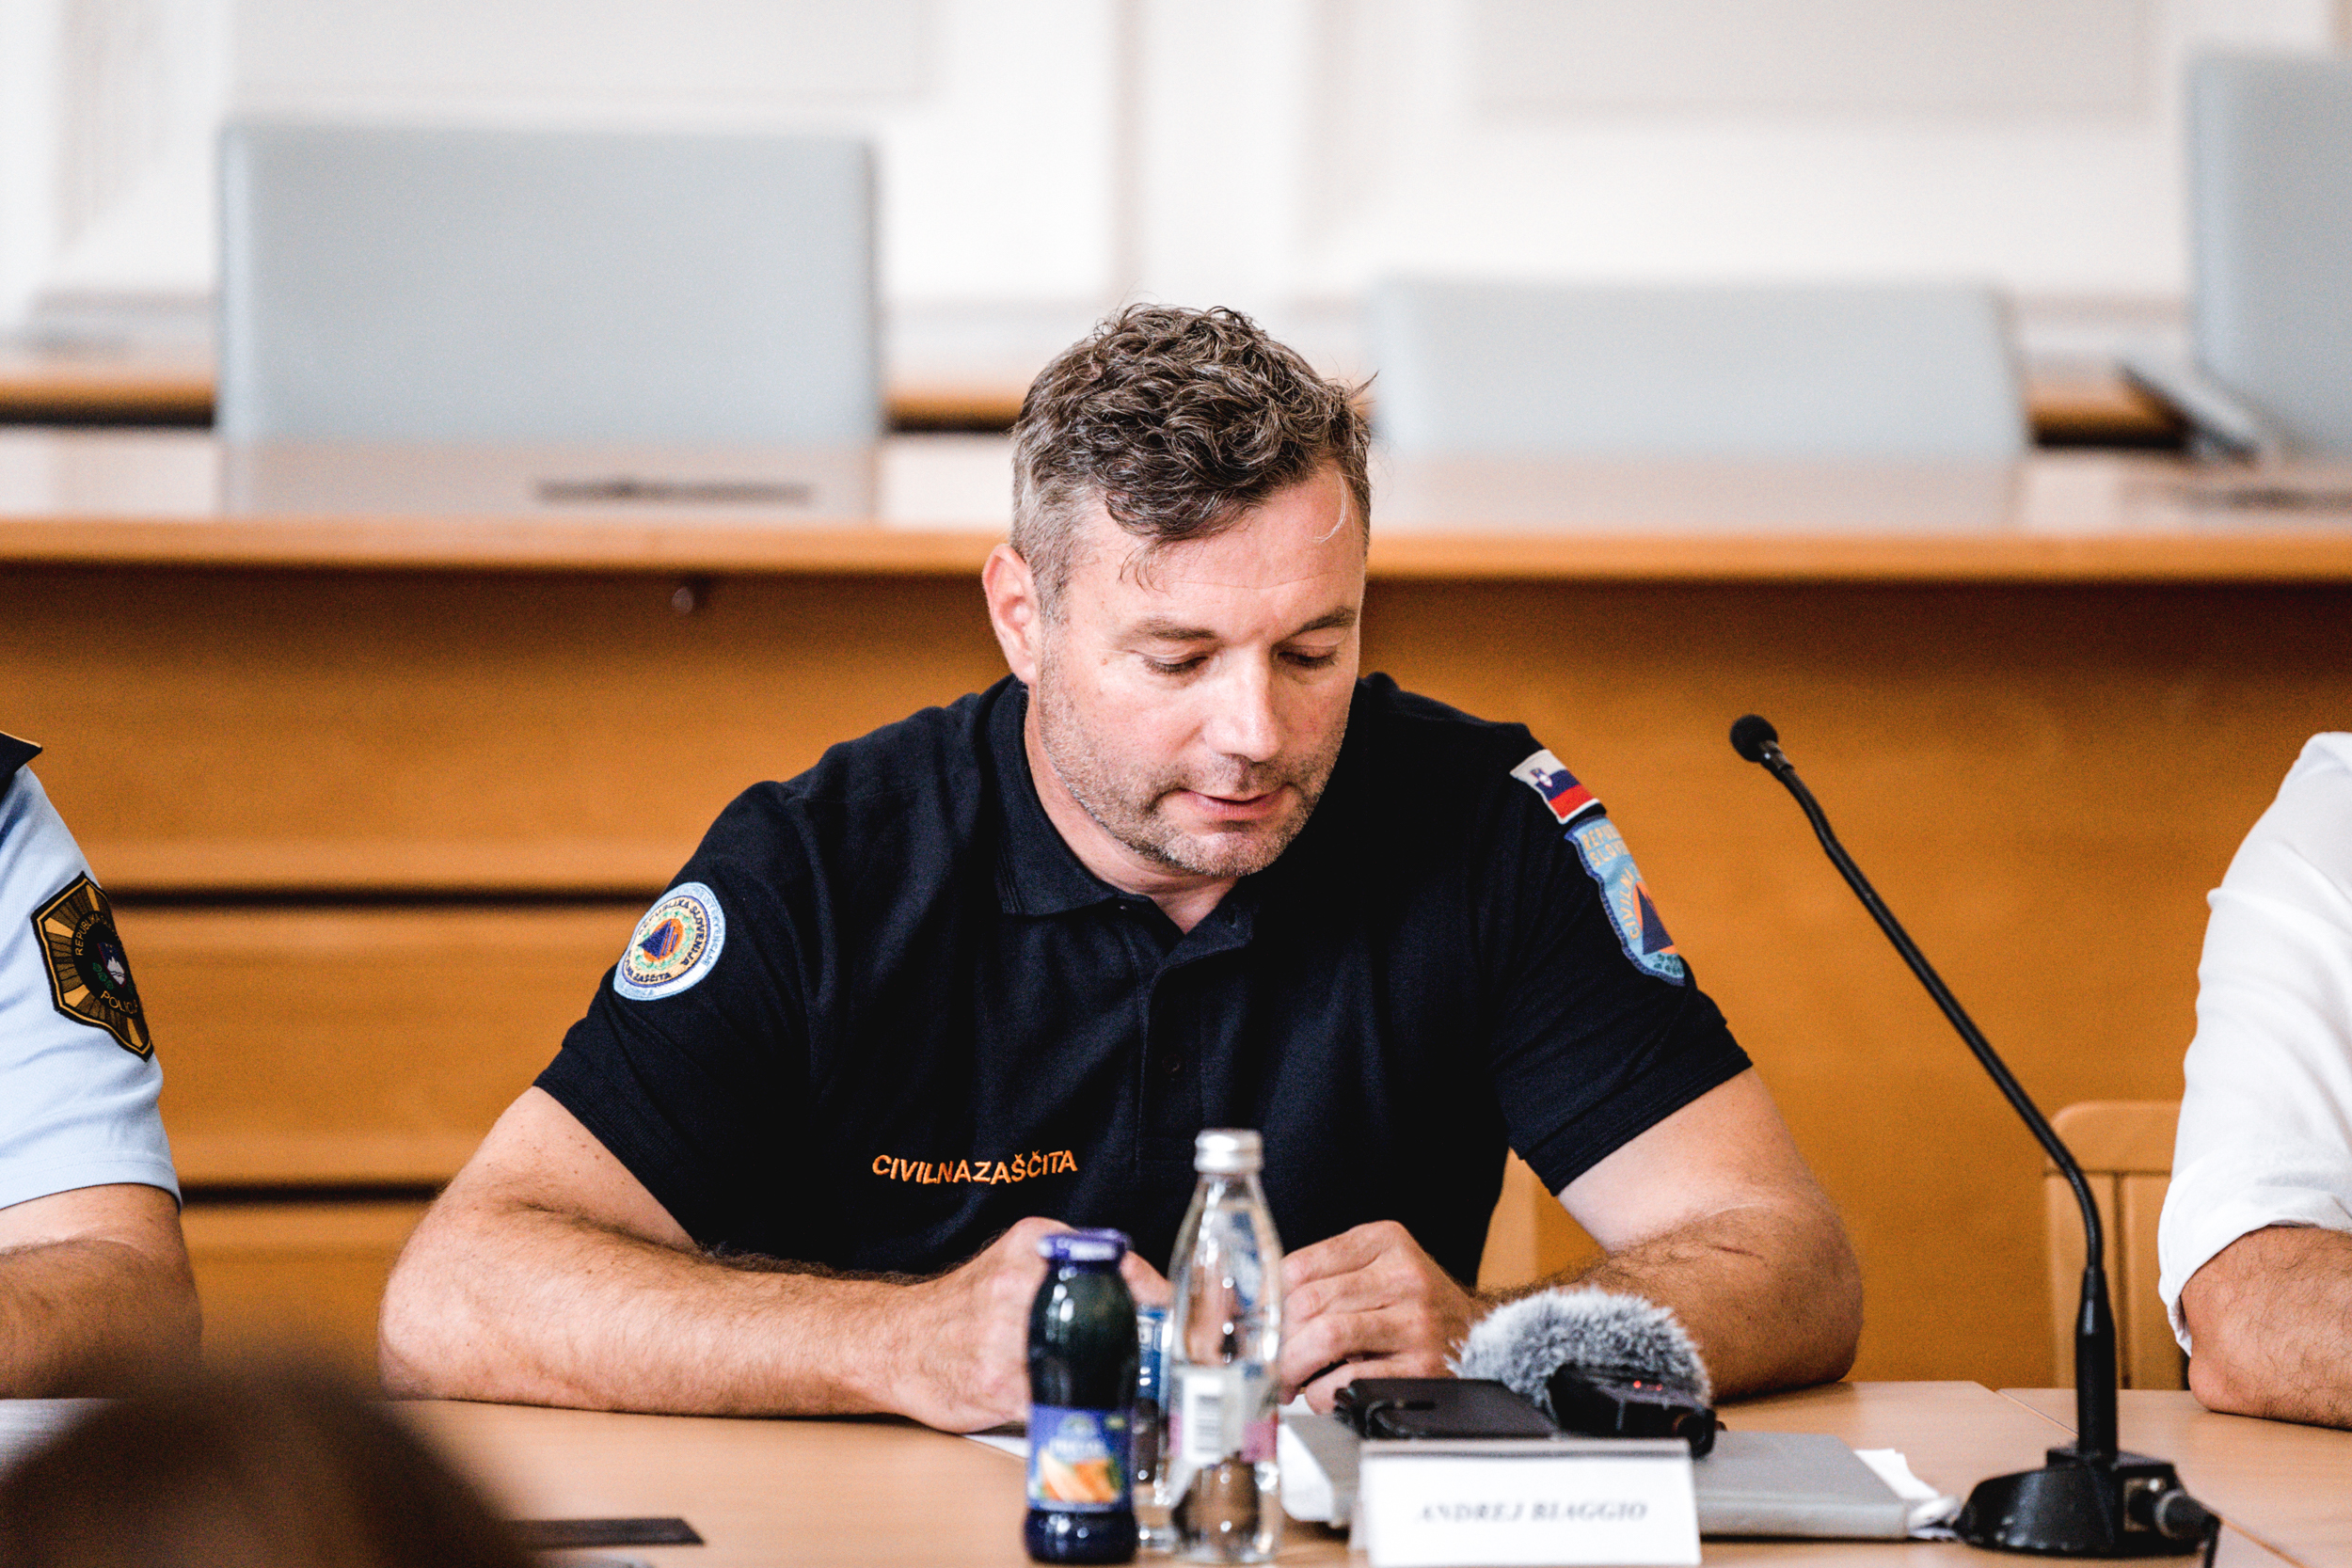 Poveljnik civilne zaščite Mestne občine Nova Gorica Andrej Biaggio